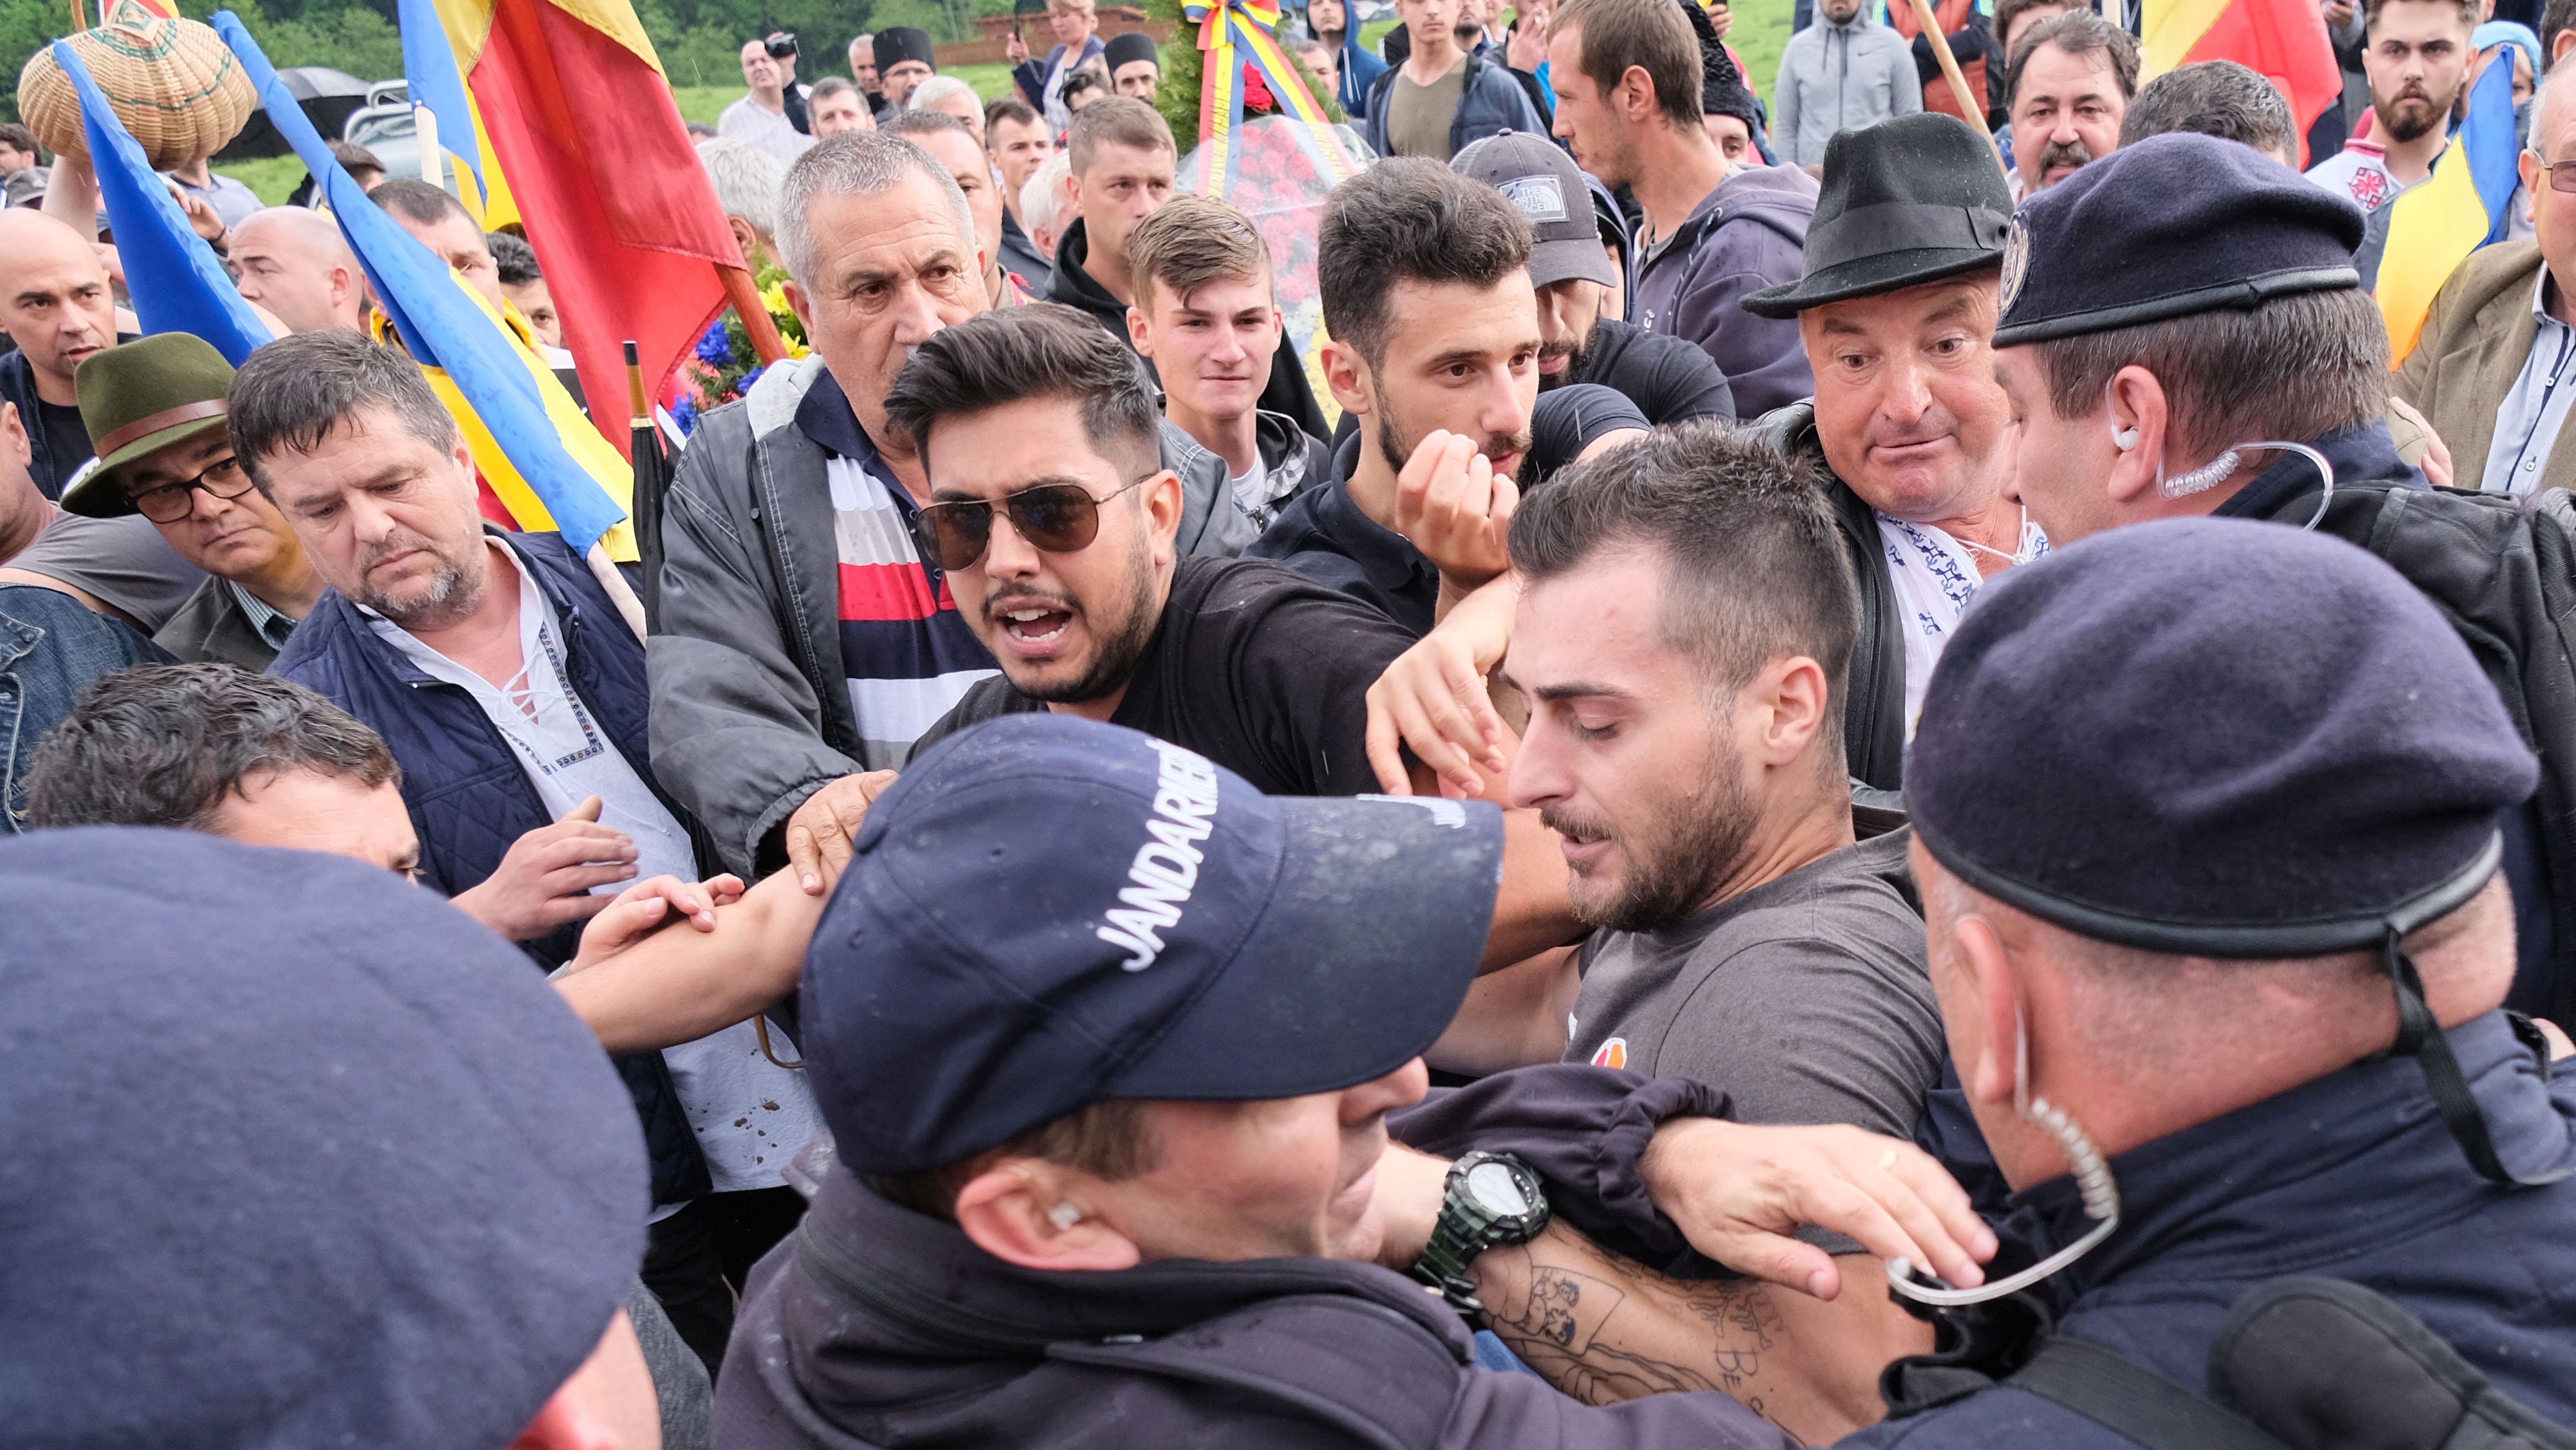 Úzvölgyi katonatemető: a román külügy szerint a magyarok szították a feszültséget